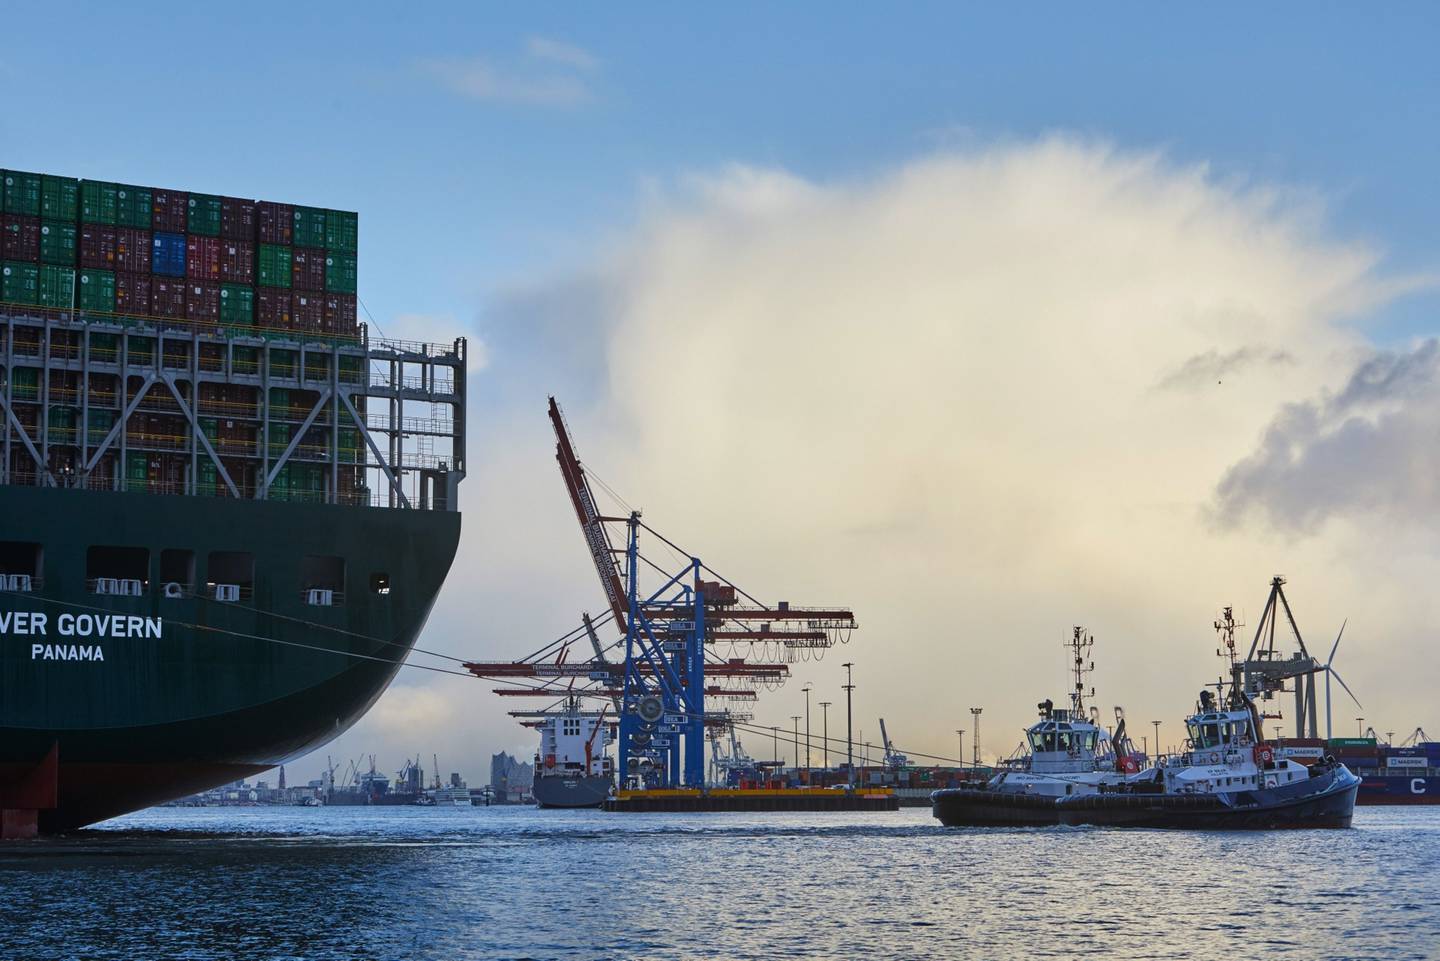 Remolcadores maniobran el portacontenedores Ever Govern, operado por Evergreen Marine Corp, en un atracadero del puerto de Hamburgo en Hamburgo, Alemania, el martes 12 de enero de 2021.